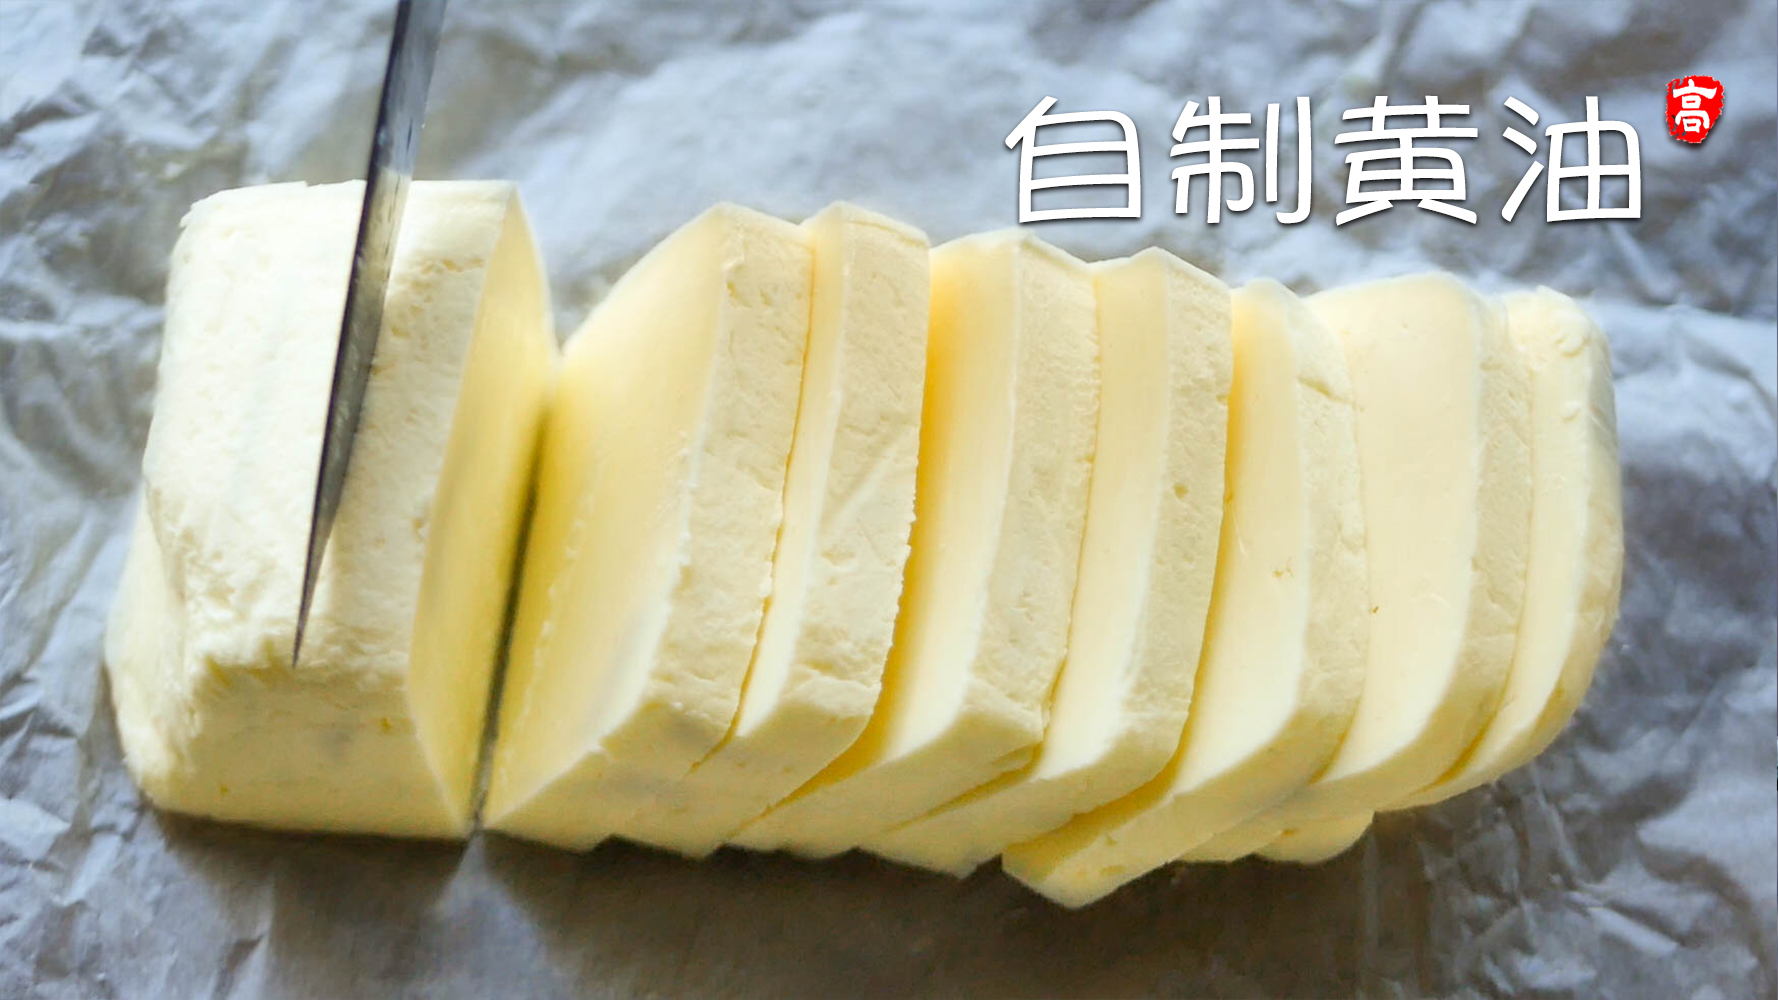 【小高姐】自制黄油 奶制品的神奇变化的做法